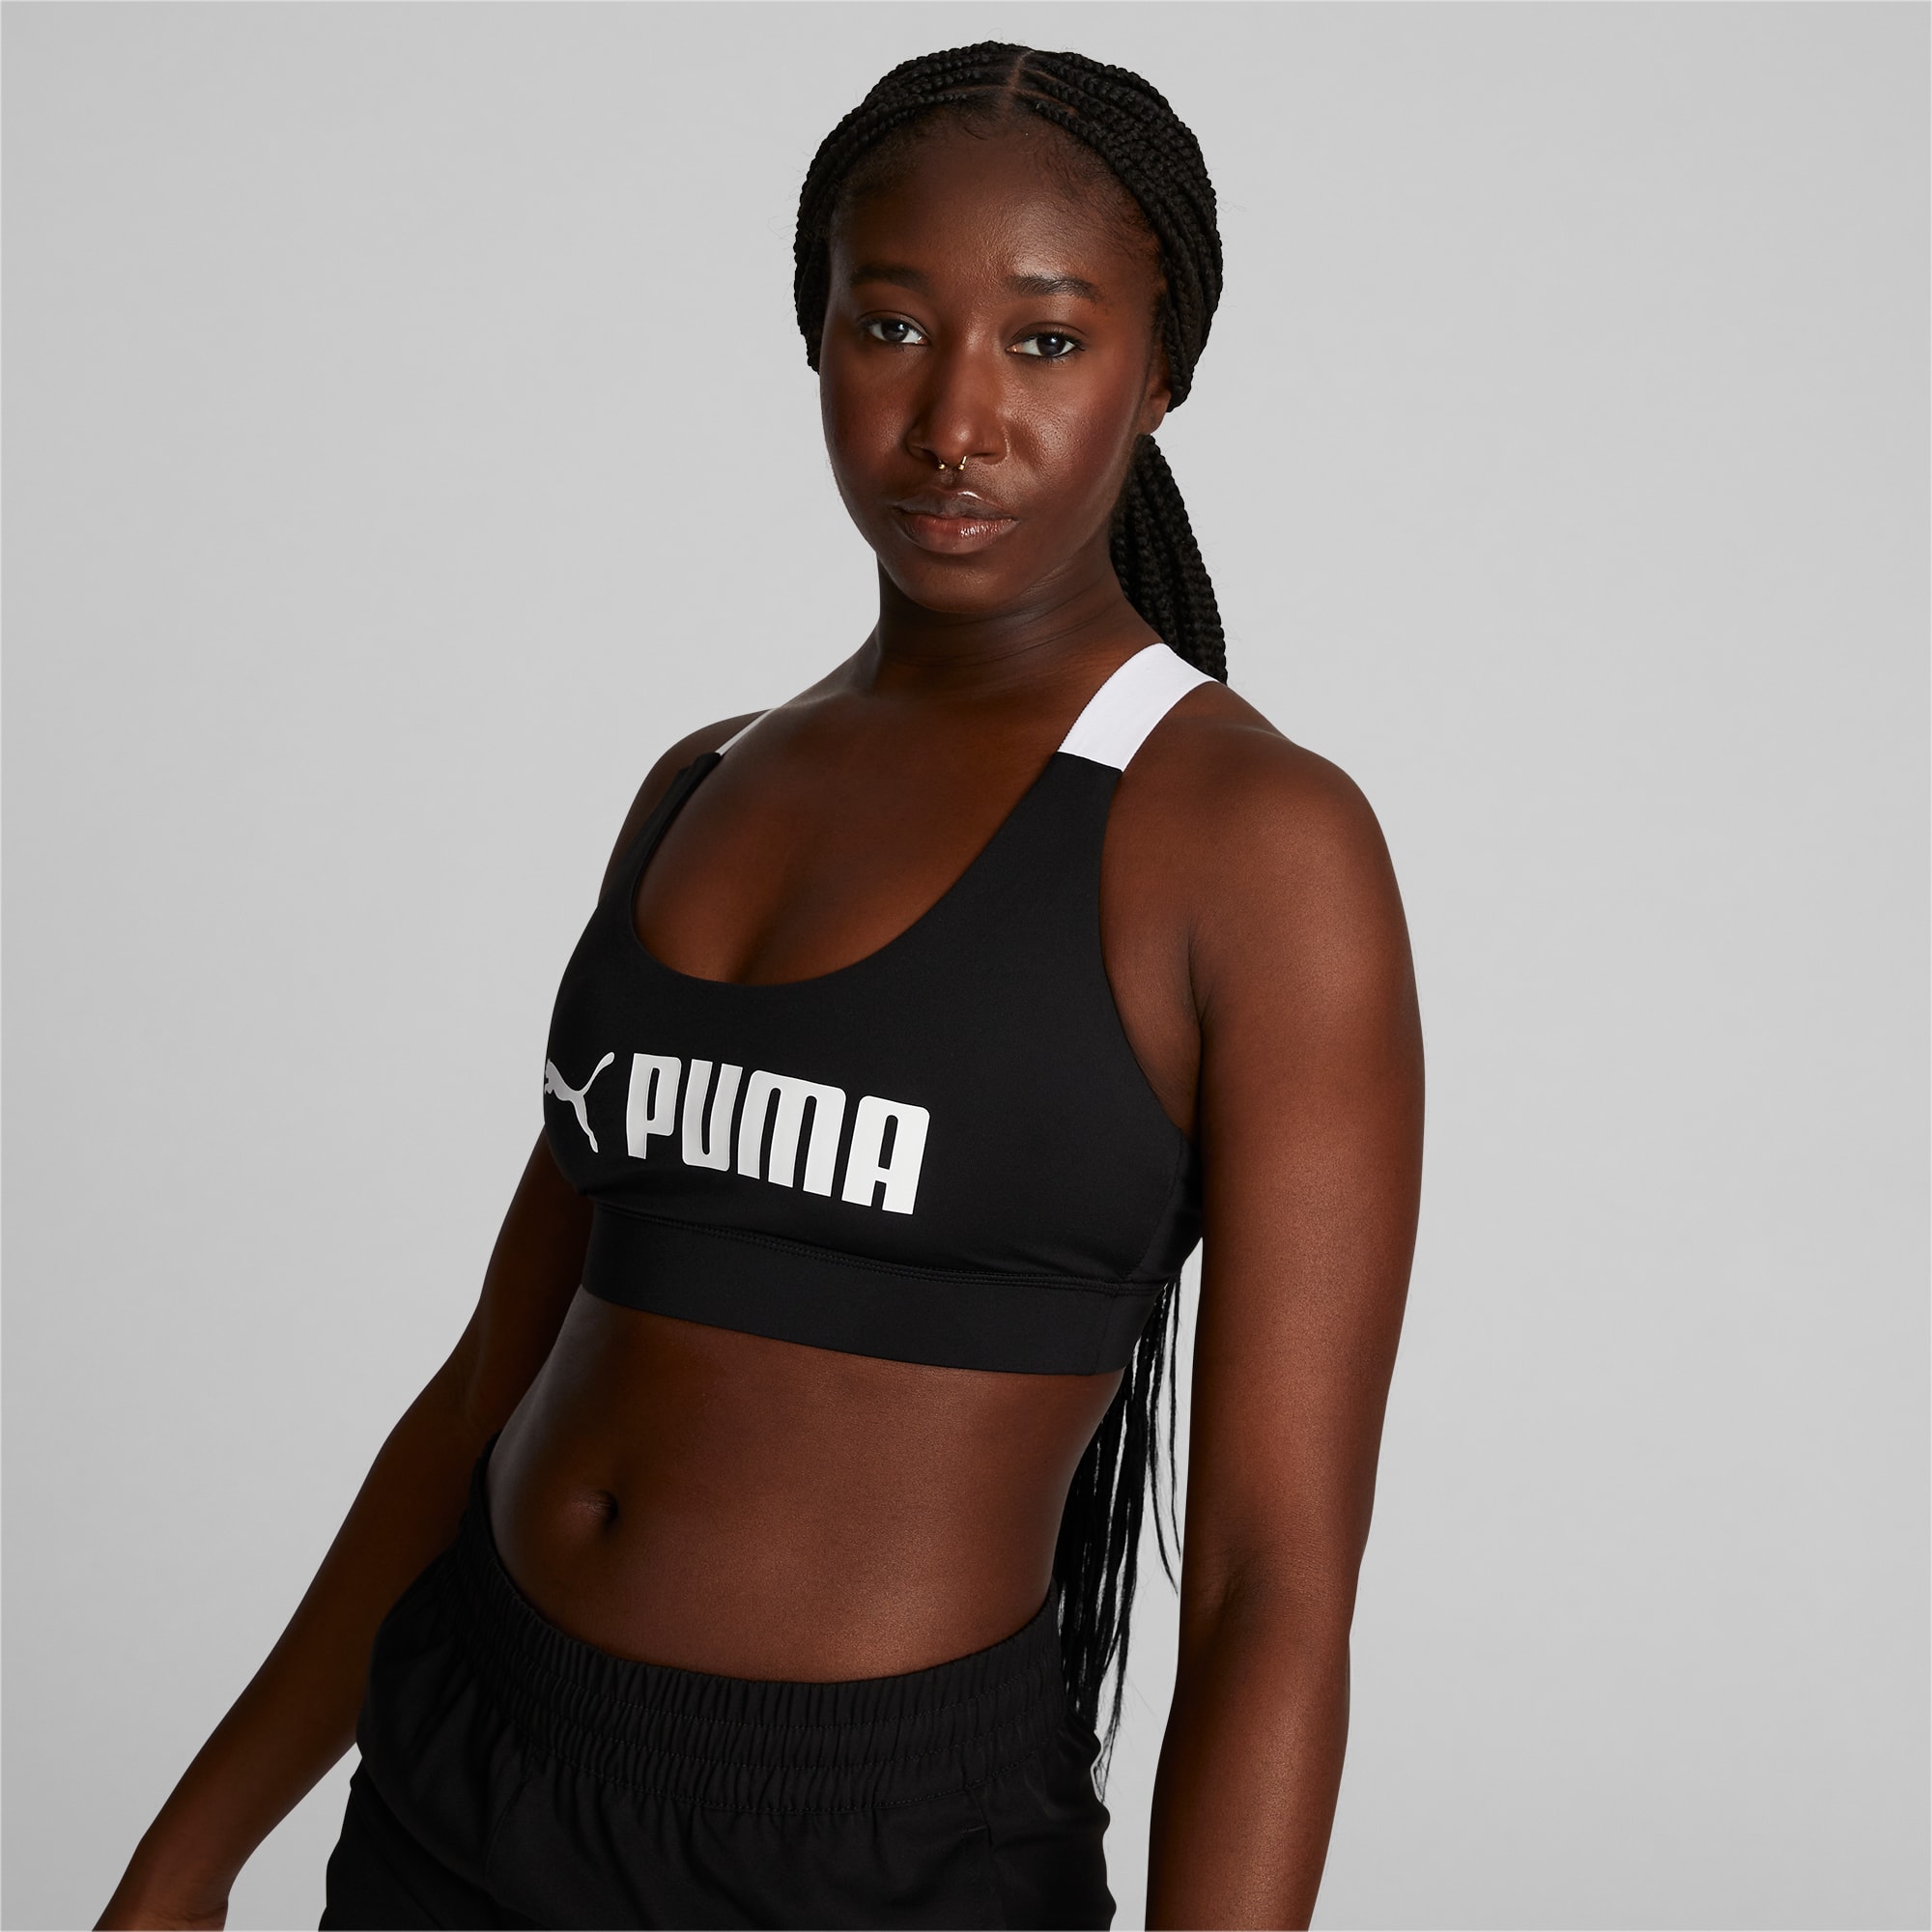 Puma - Studio Granola light support strappy sports bra in muted